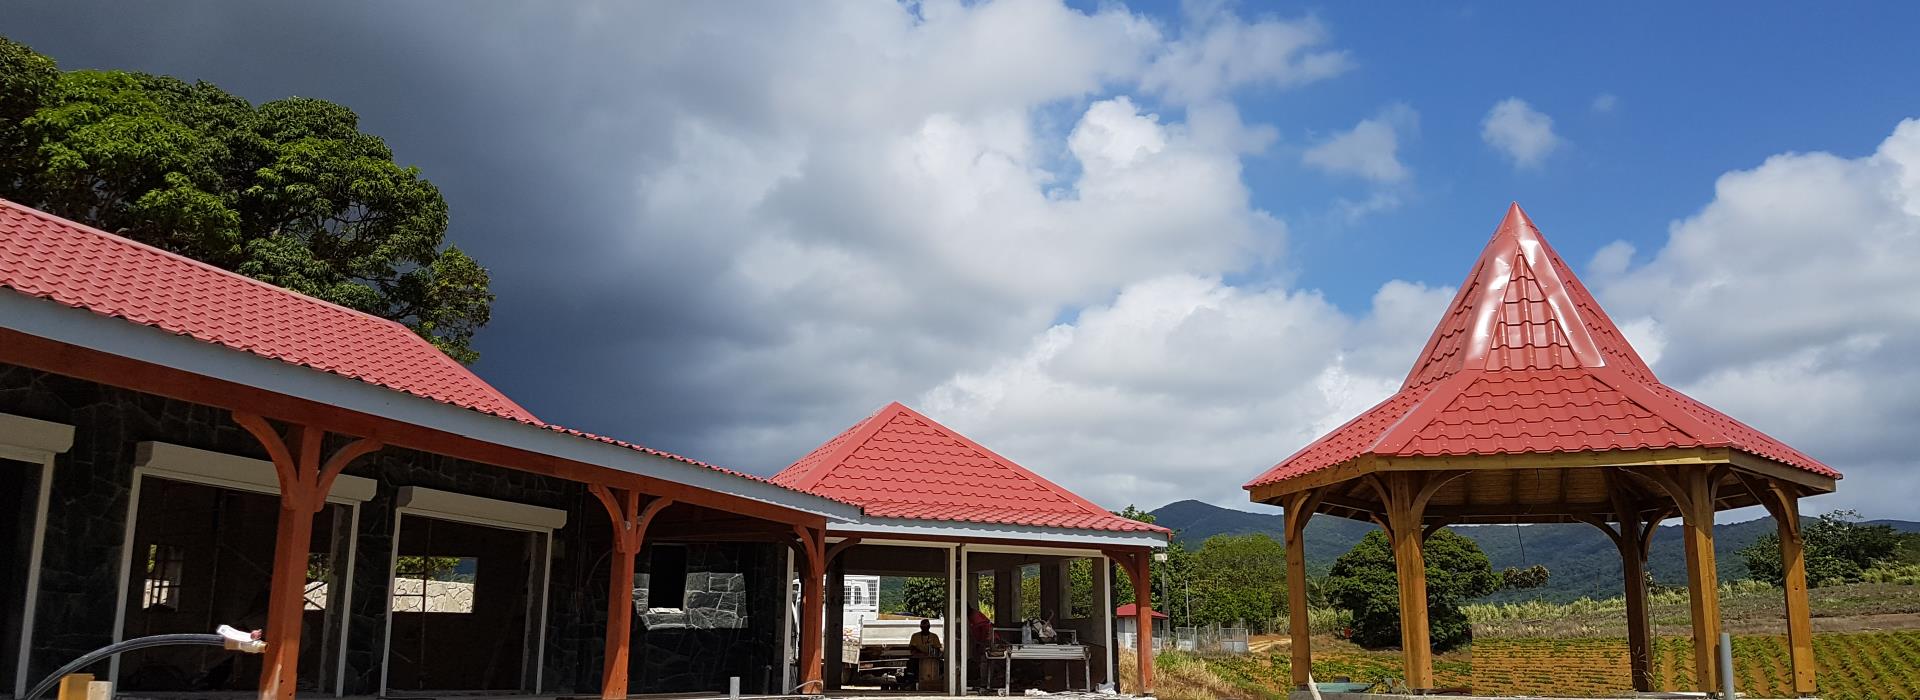 Tôle ondulée colorée - Toiture maison créole - TPG - Guadeloupe - Antilles